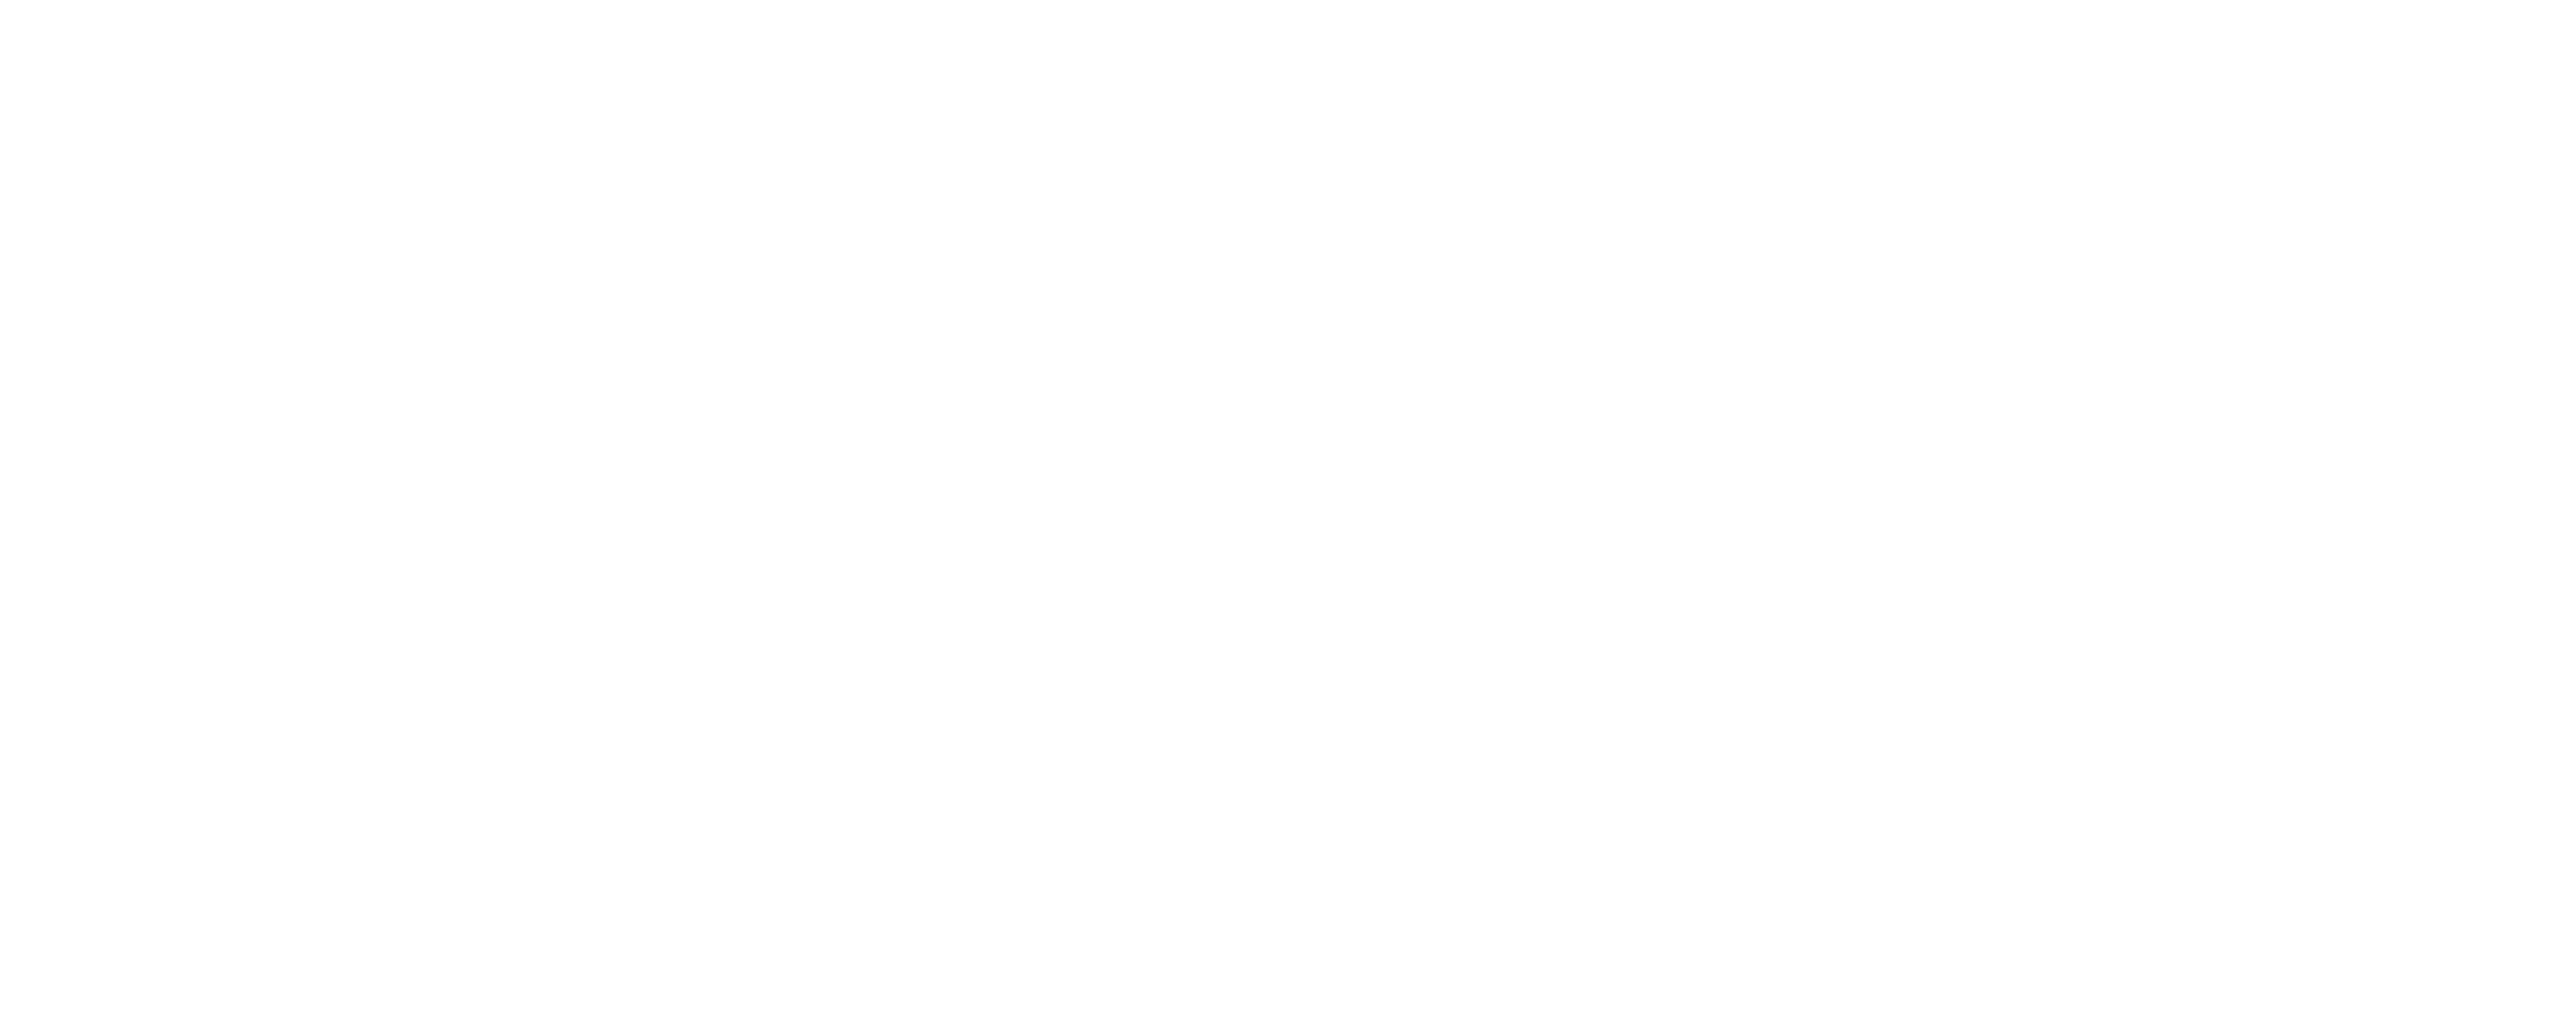 haptonomie-wei-coaching-therapie-apeldoorn-gezond-blijven-logo-wit